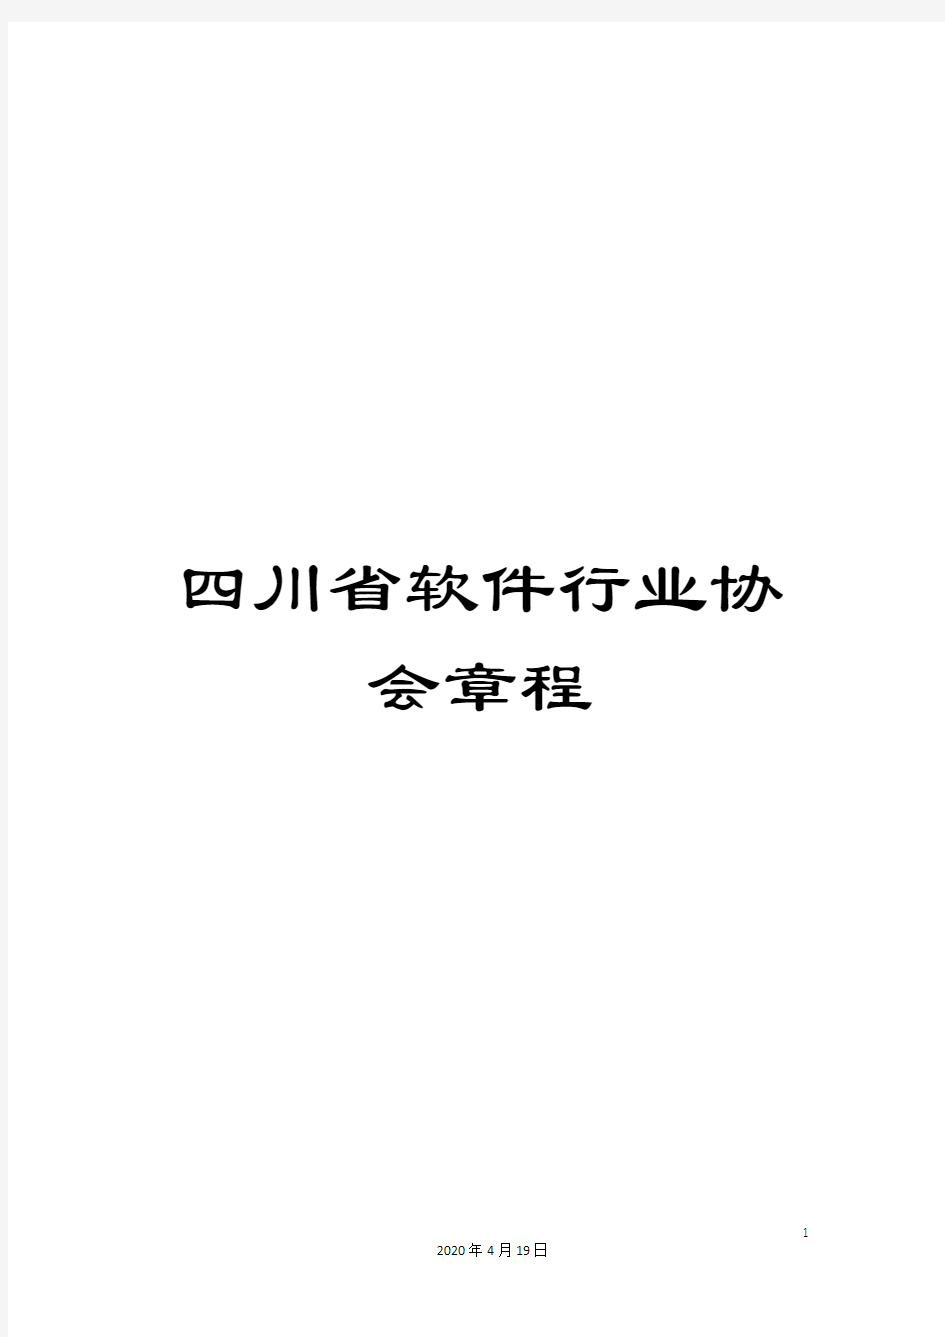 四川省软件行业协会章程